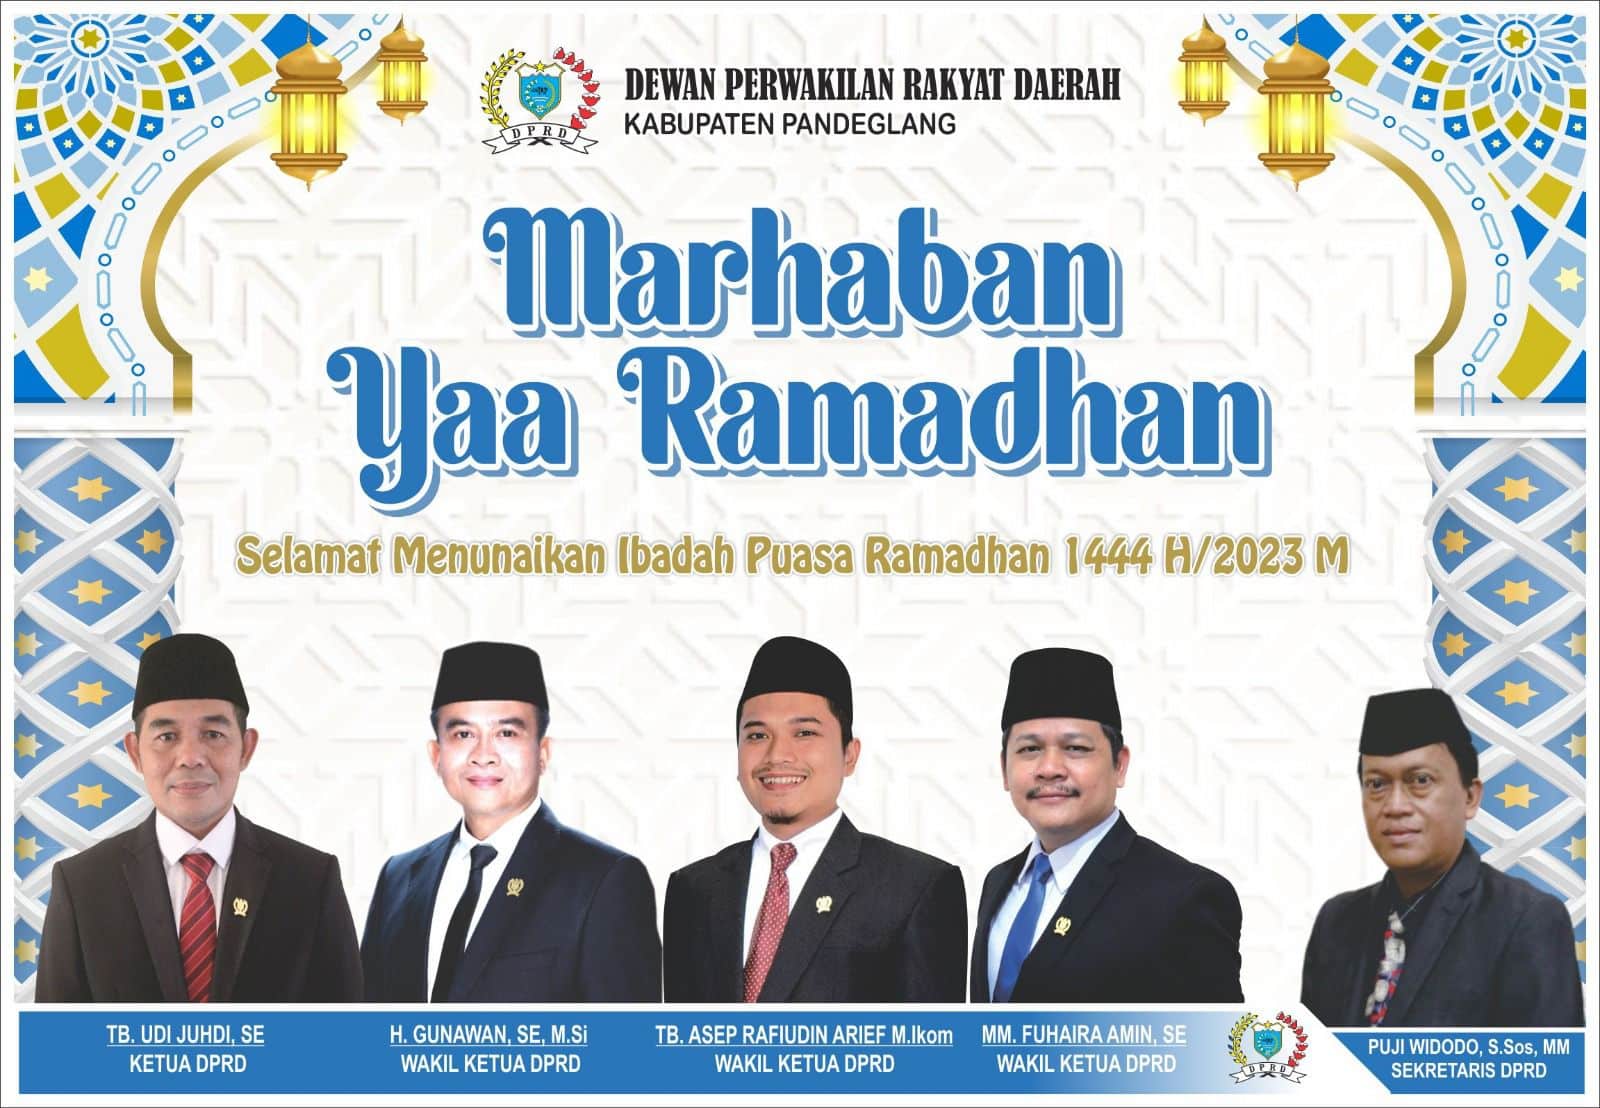 Marhaban Yaa Ramadhan DPRD Kab Pandeglang